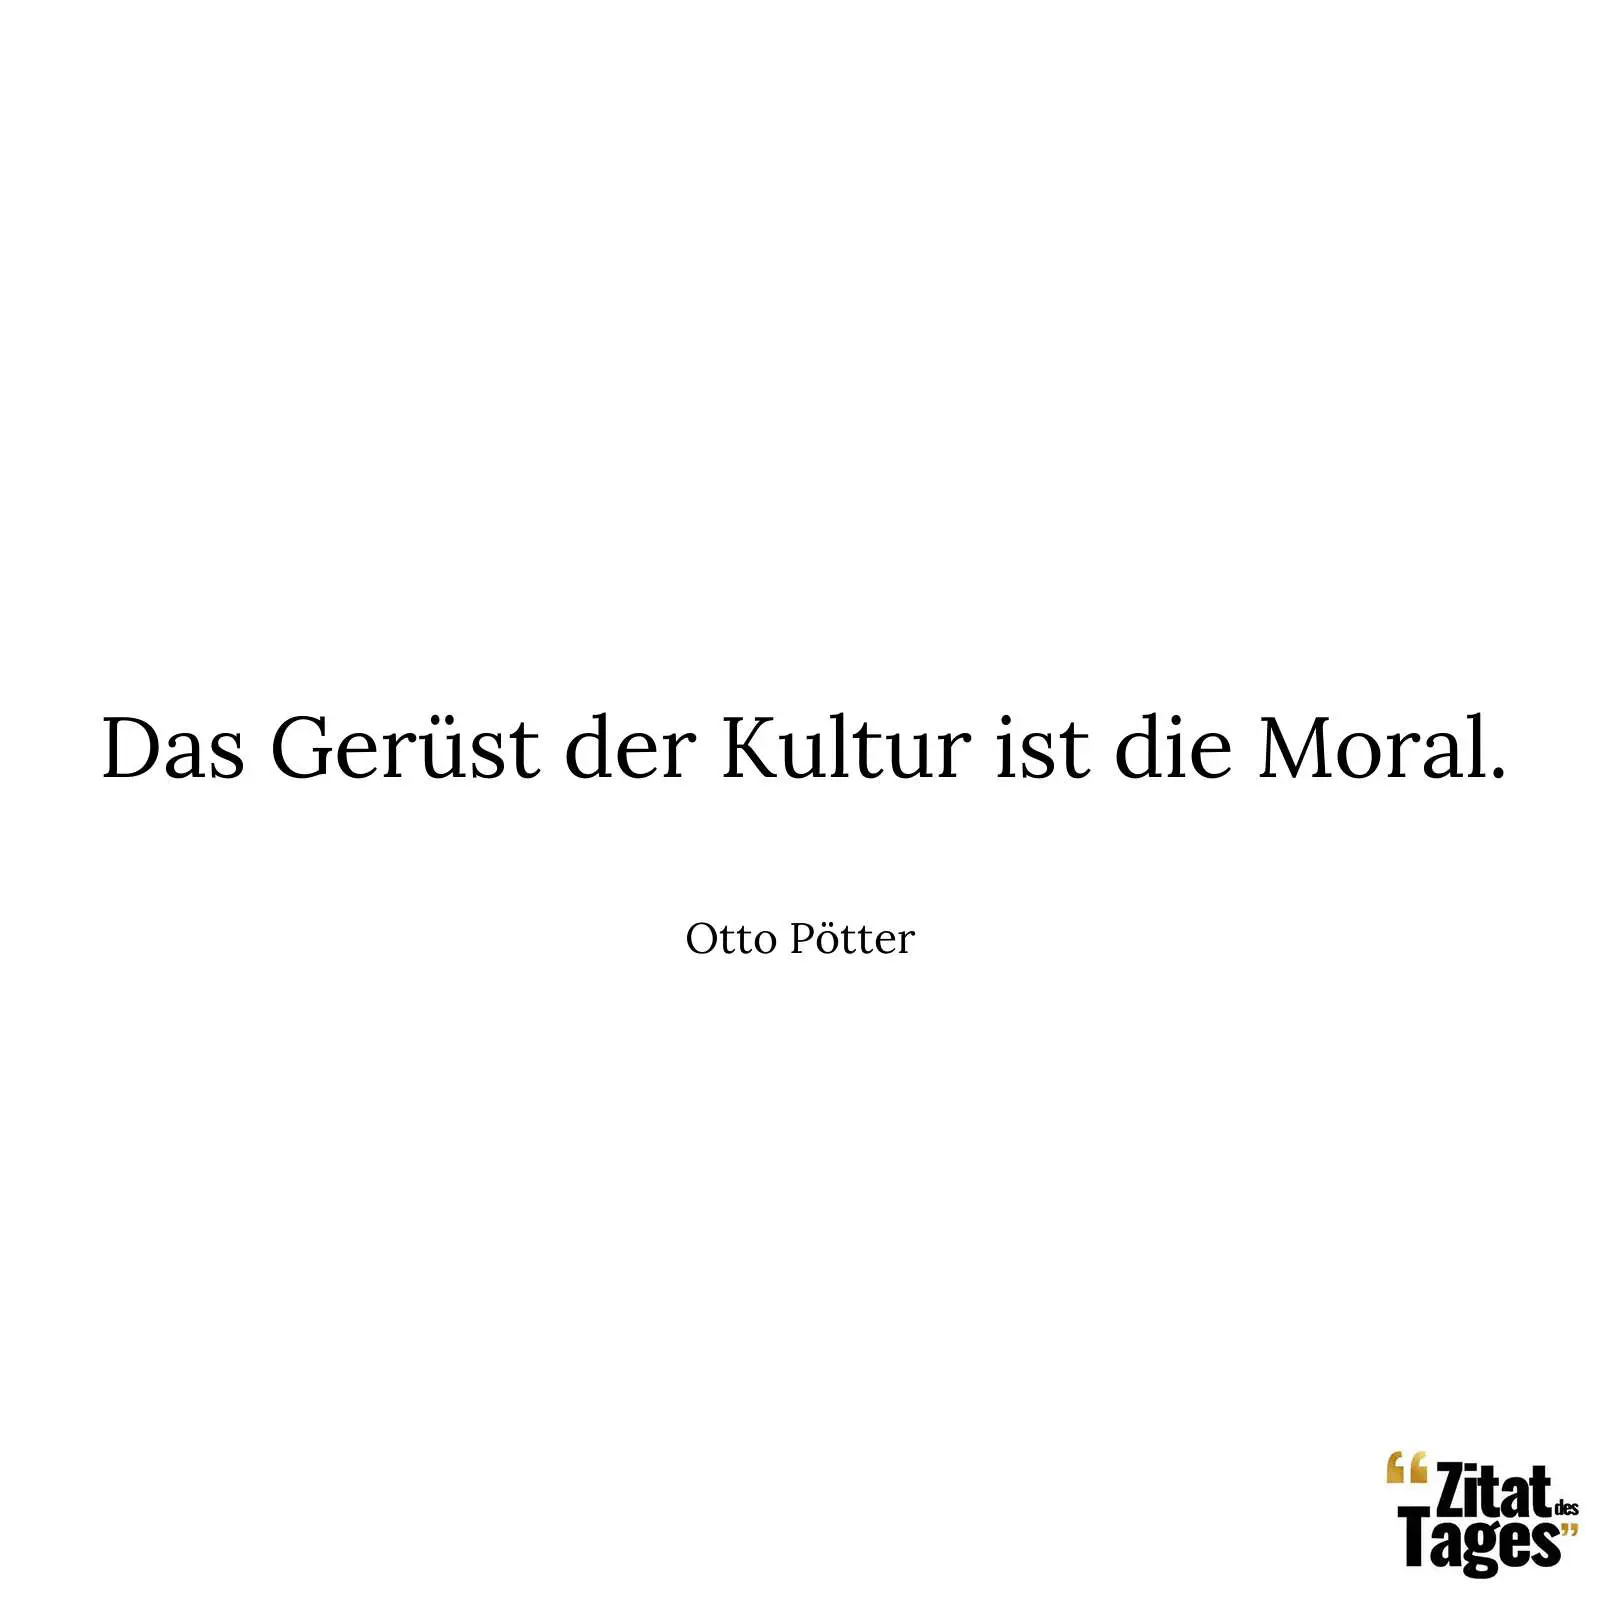 Das Gerüst der Kultur ist die Moral. - Otto Pötter